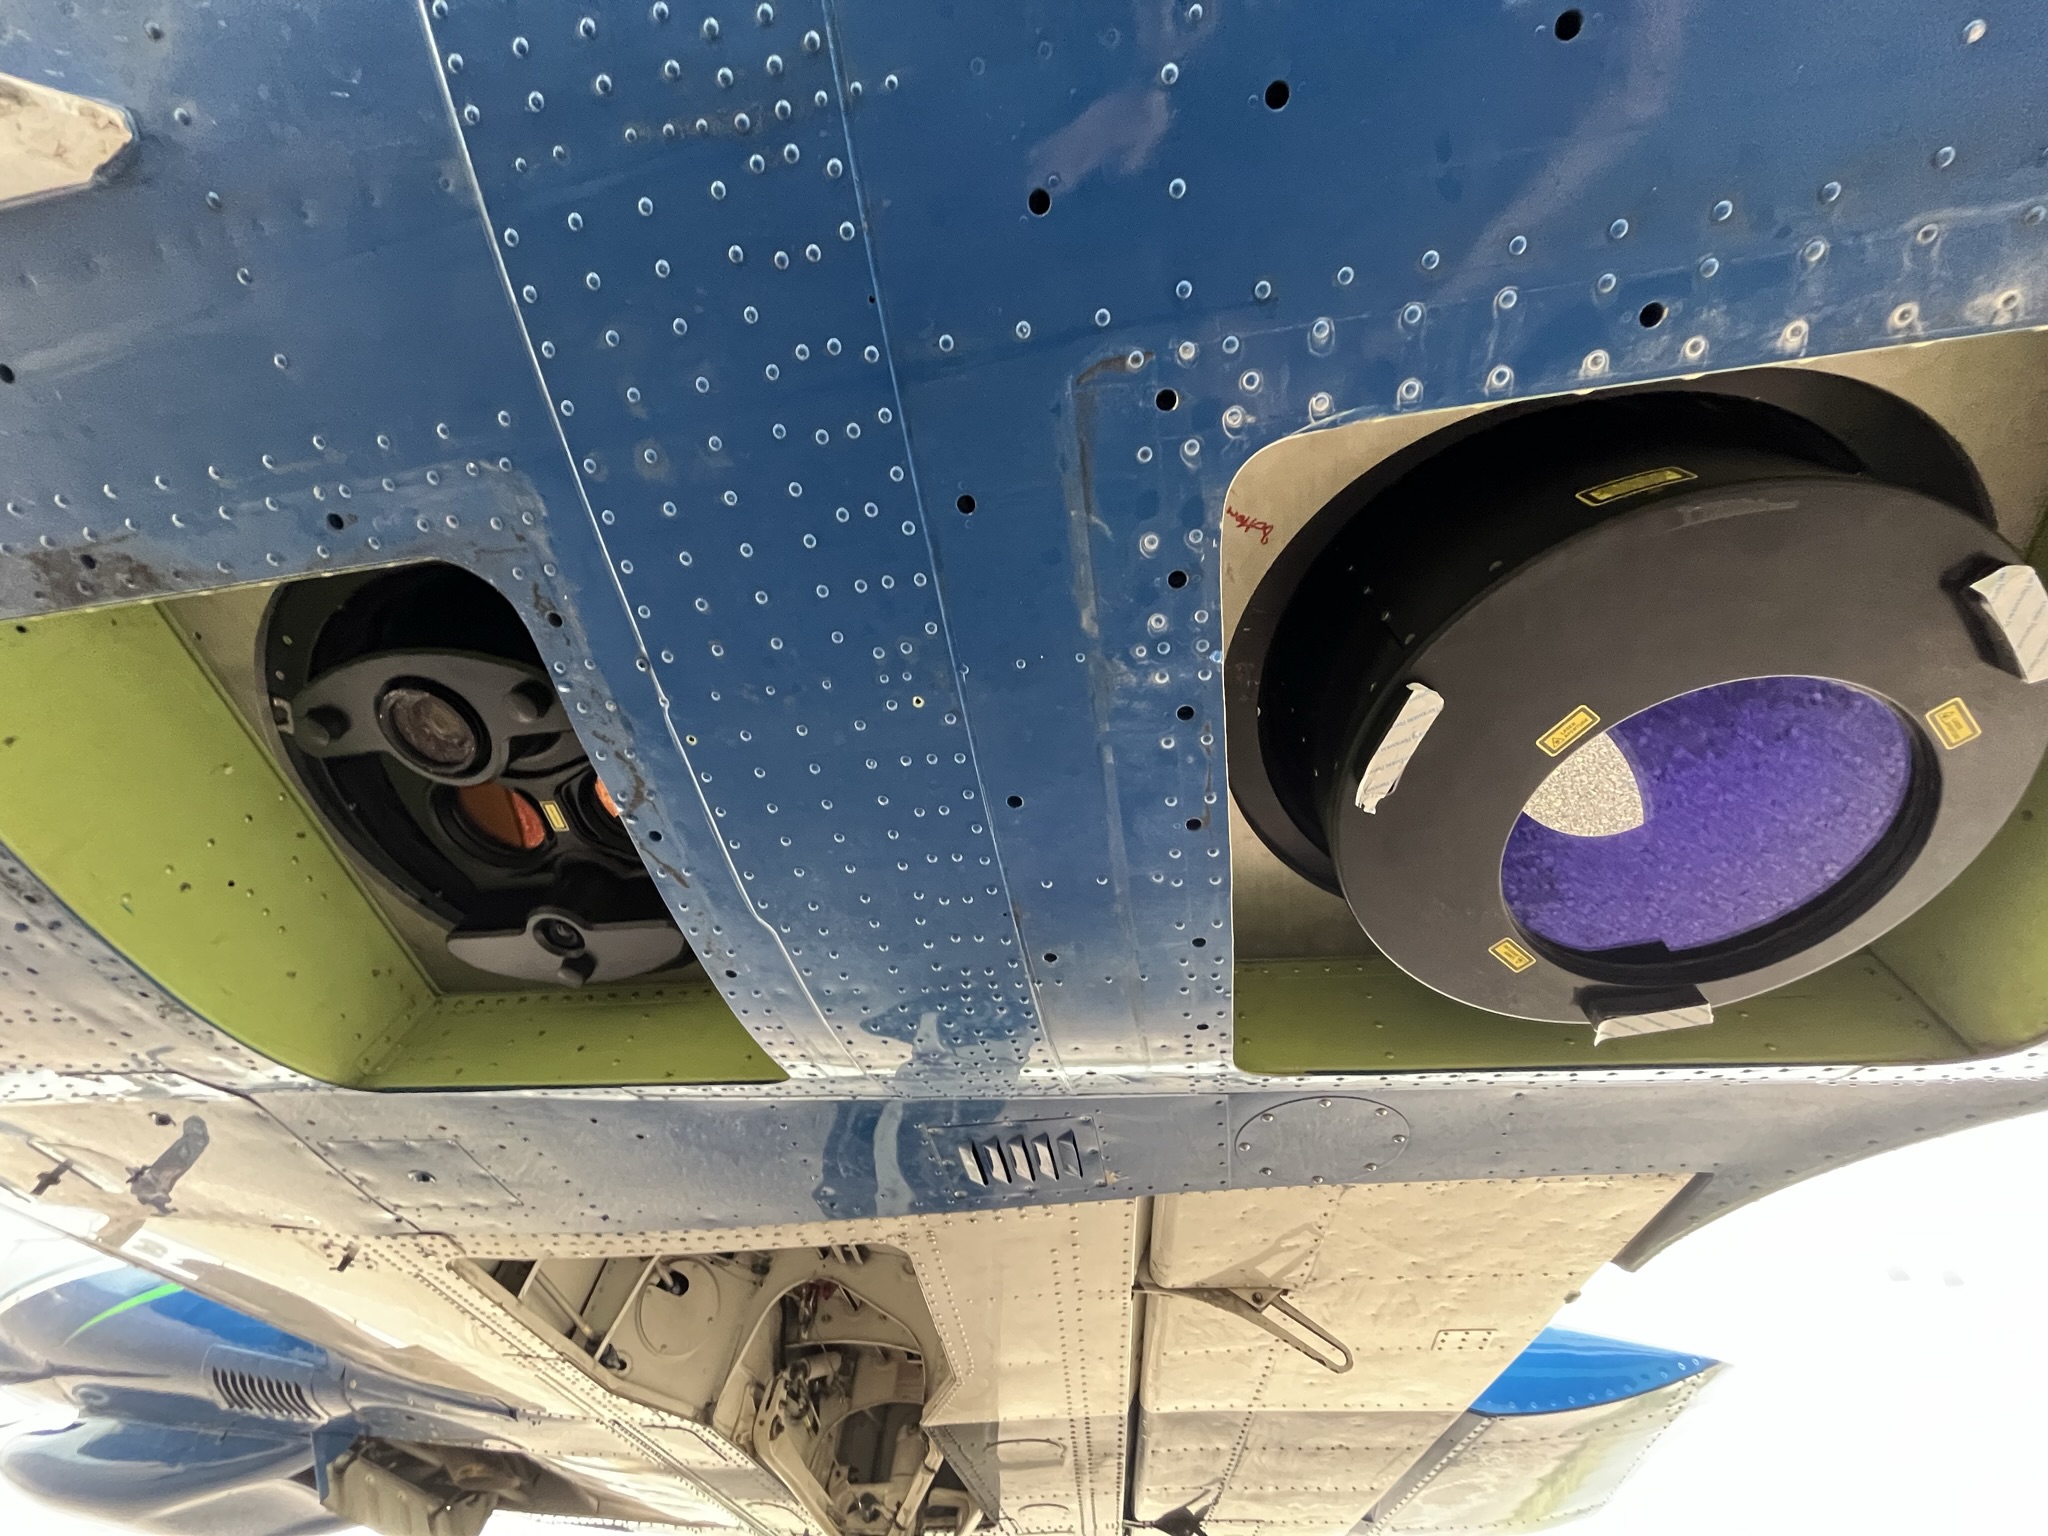 Les trappes sous l'avion laissant voir les capteurs laser topo et petits fonds (à gauche) et grands fonds (à droite) (crédits Shom)